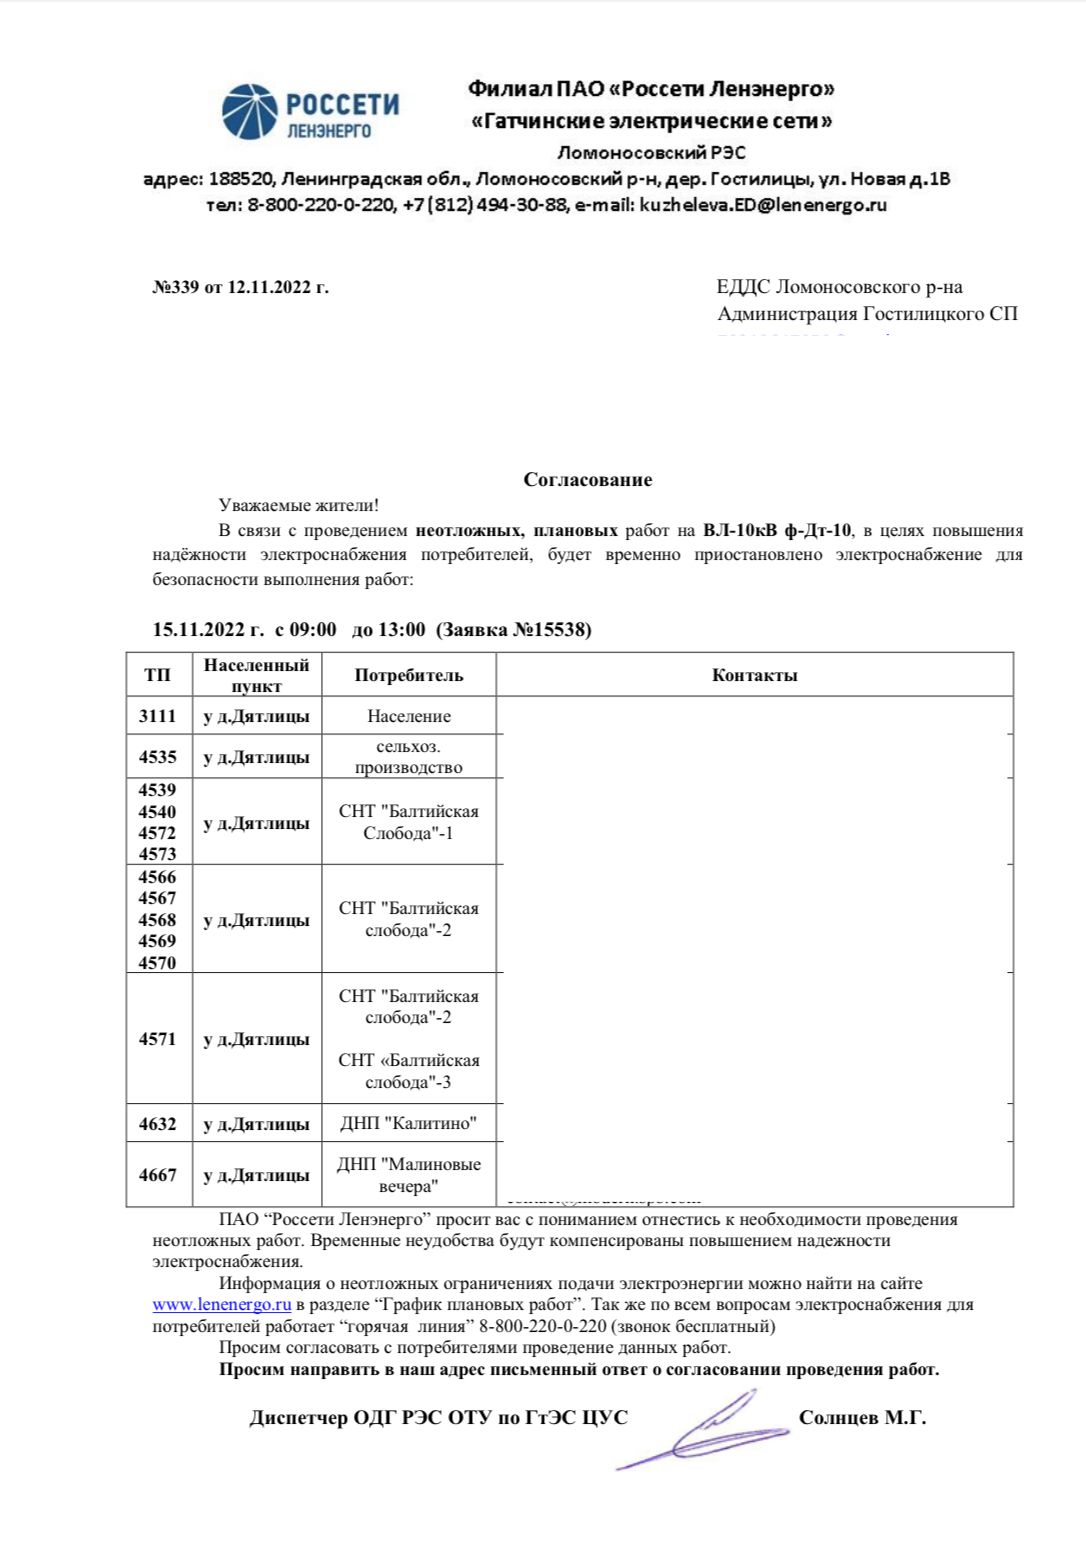 Письмо ПАО Ленэнерго №339 от 12.11.2022 г. (Ф-10 ПС-Дт на 15.11.2022)